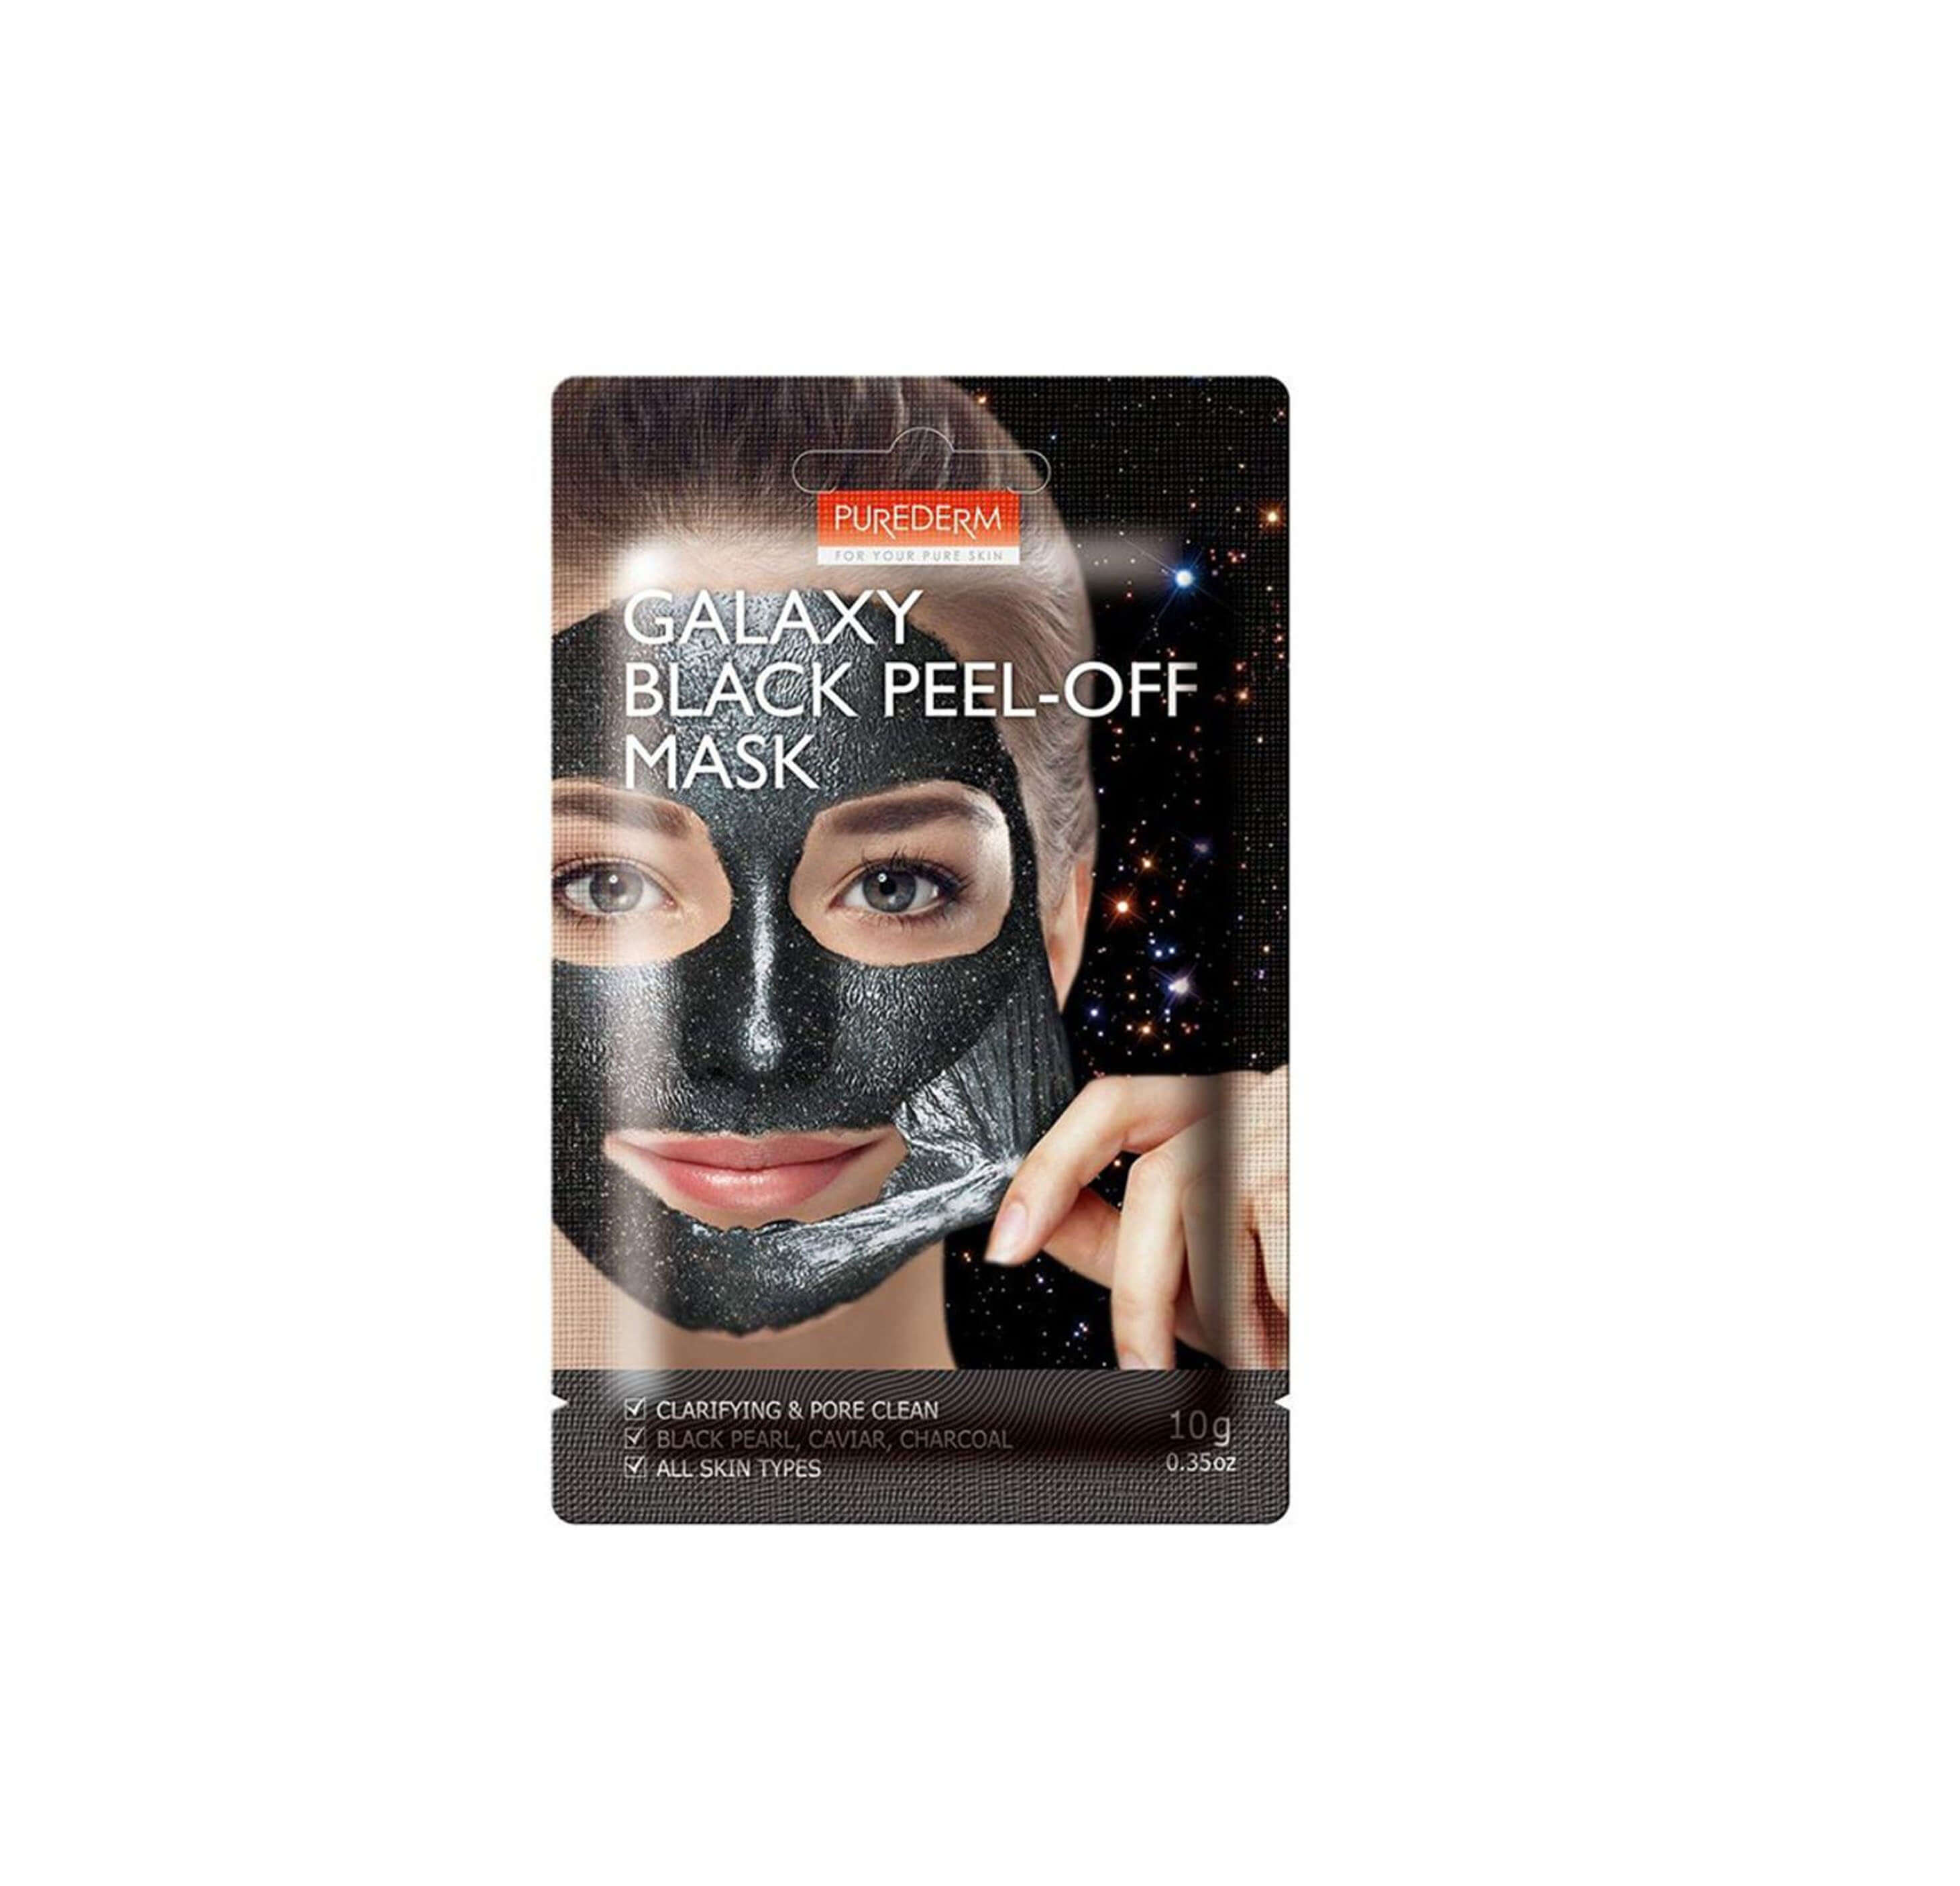 Purederm Galaxy Black Peel-off Mask